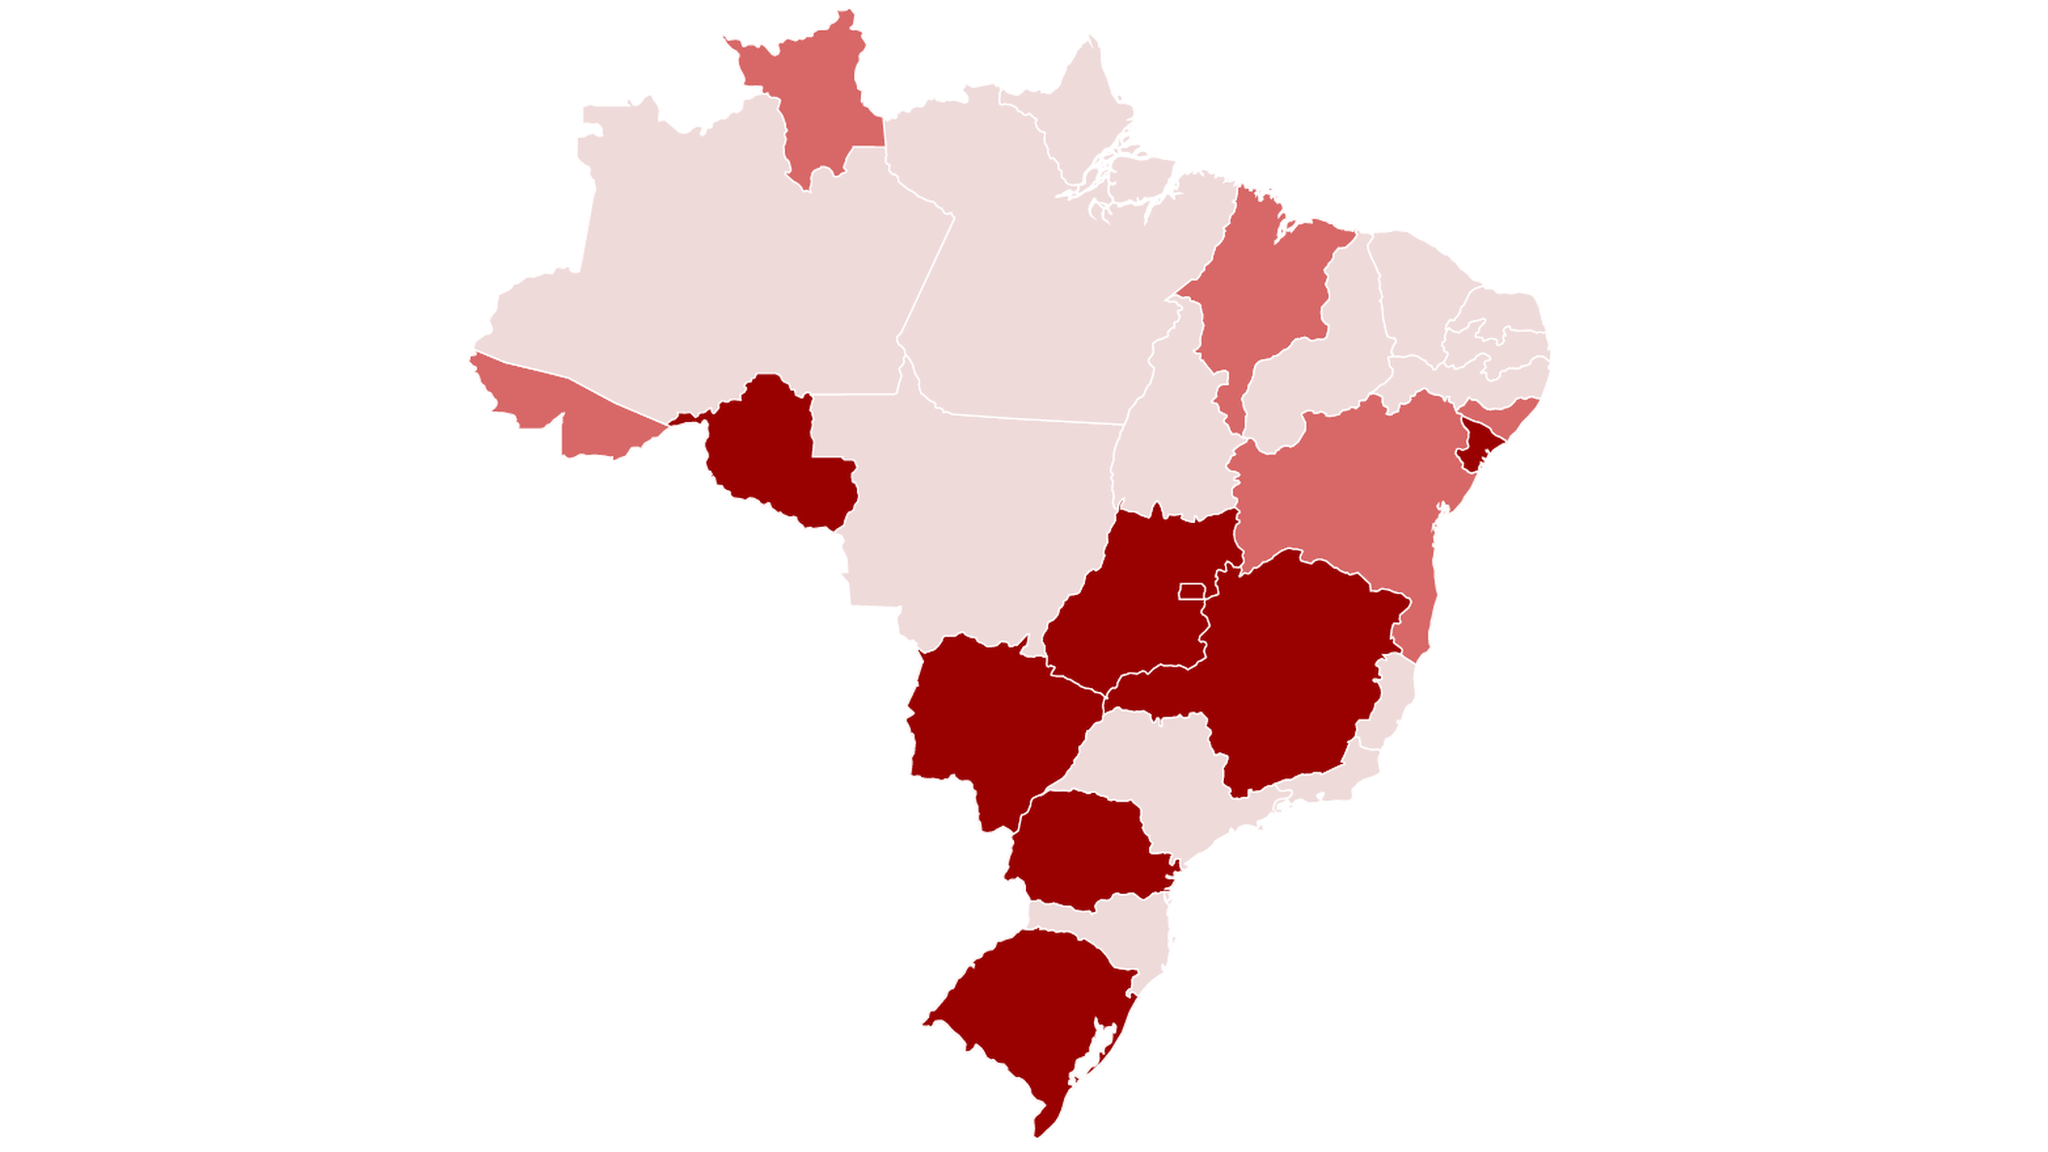 grfico com tendencias da pandemia no brasil